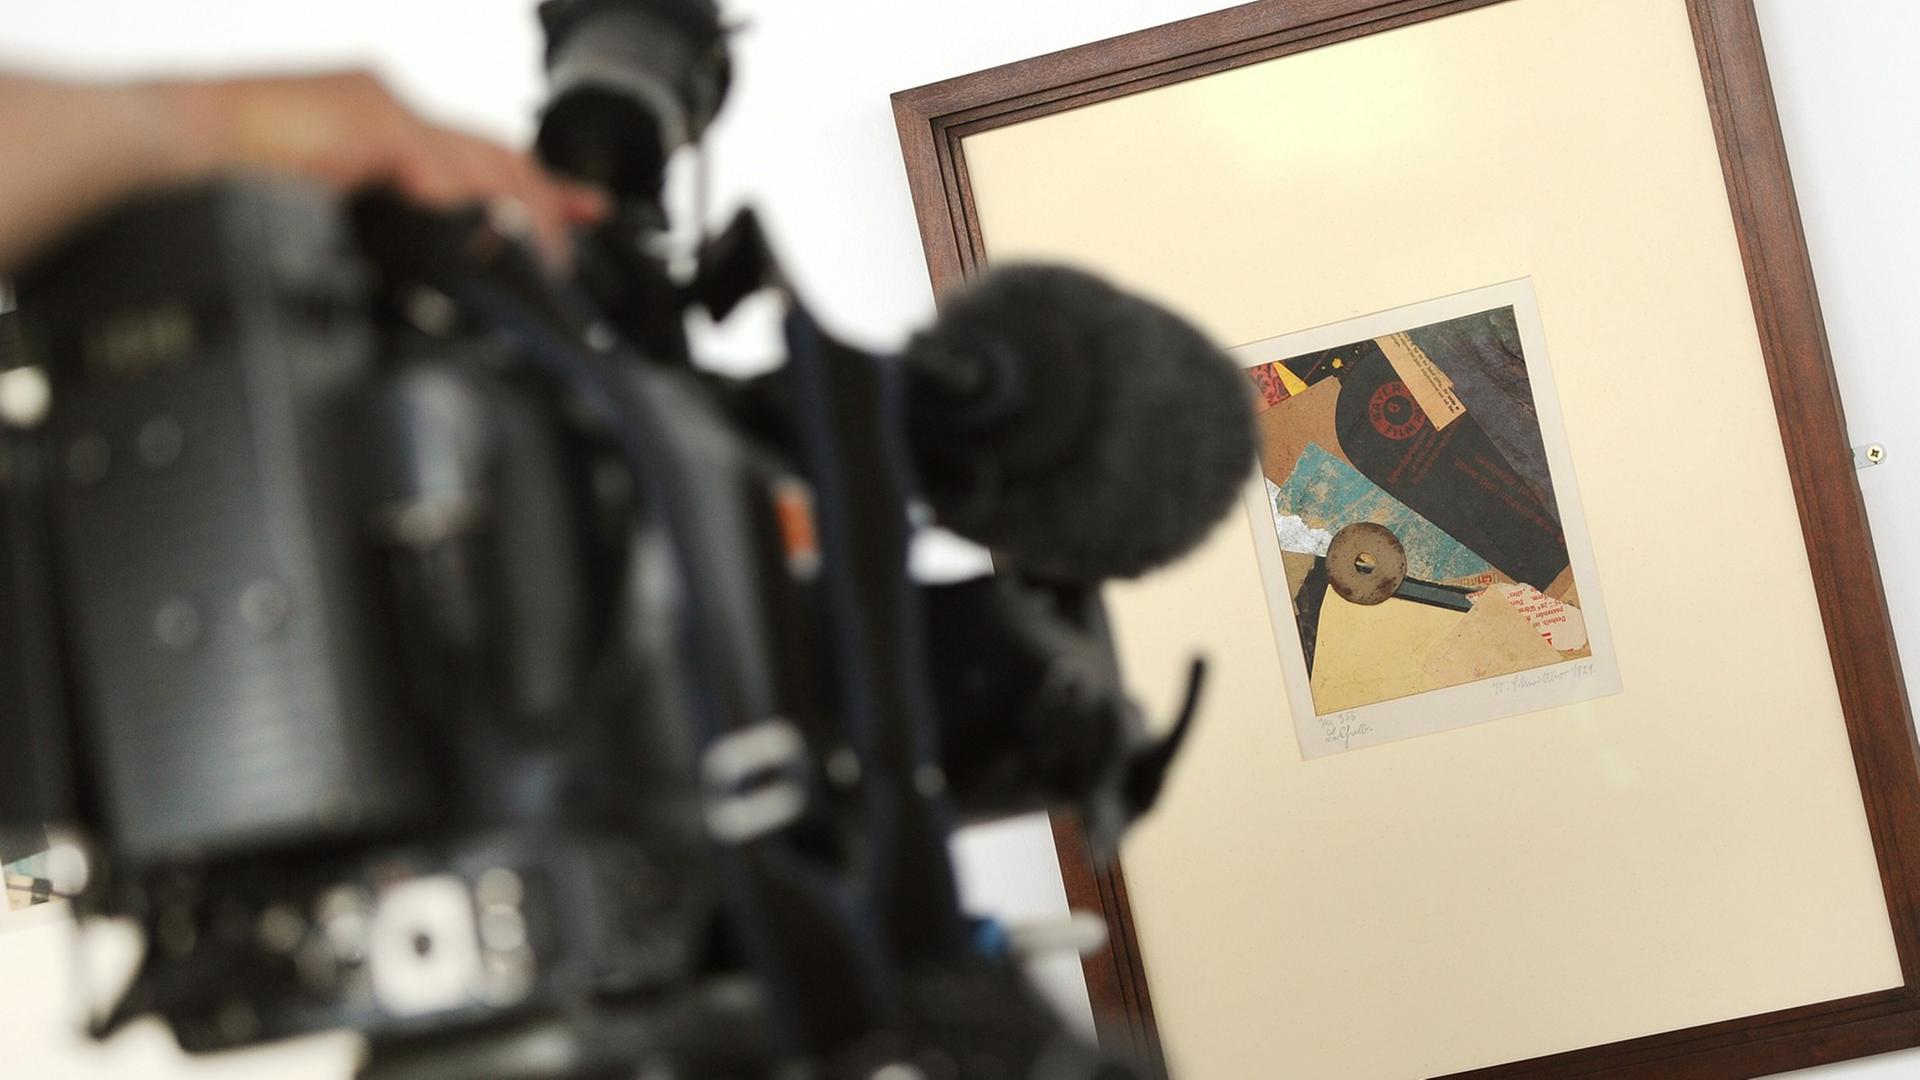 Ein Kameramann filmt das Kunstwerk "Deshalb" (Merzbild 356, 1921) von Kurt Schwitters am 07.07.2014 auf einer Pressekonferenz der Stiftung Preußischer Kulturbesitz in Berlin.